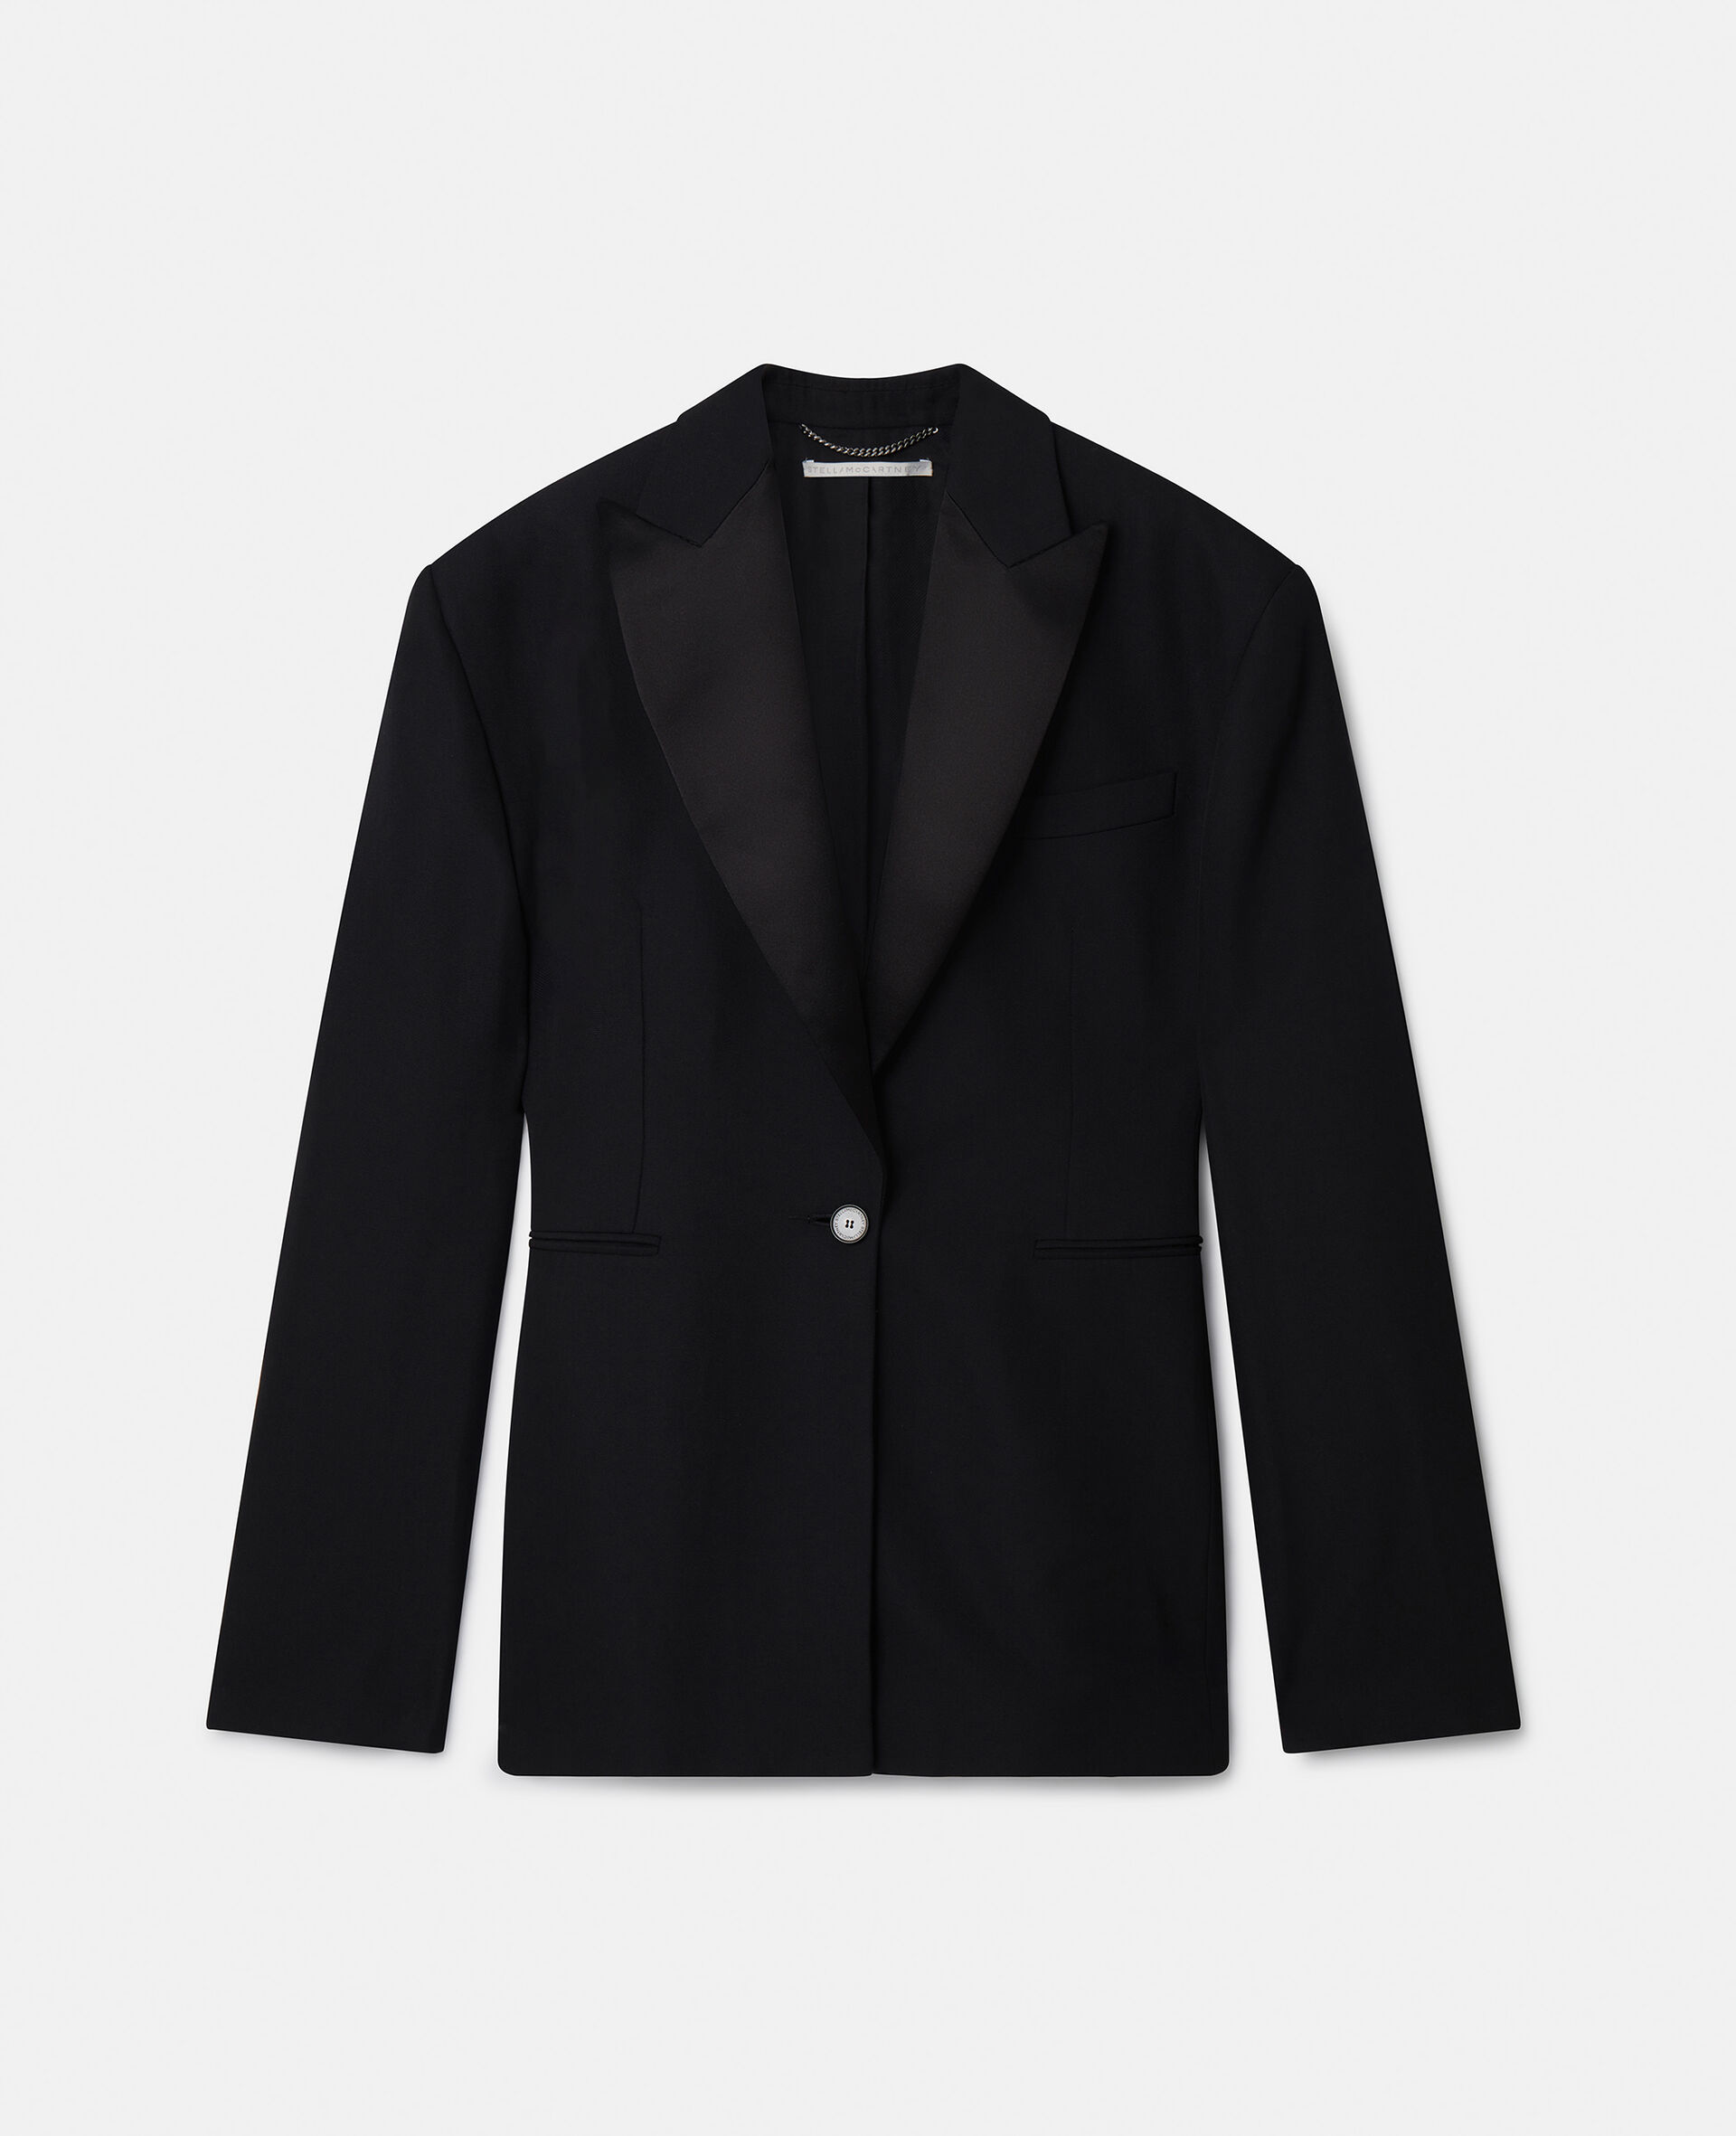 Oversized Tuxedo Jacket-Black-large image number 0